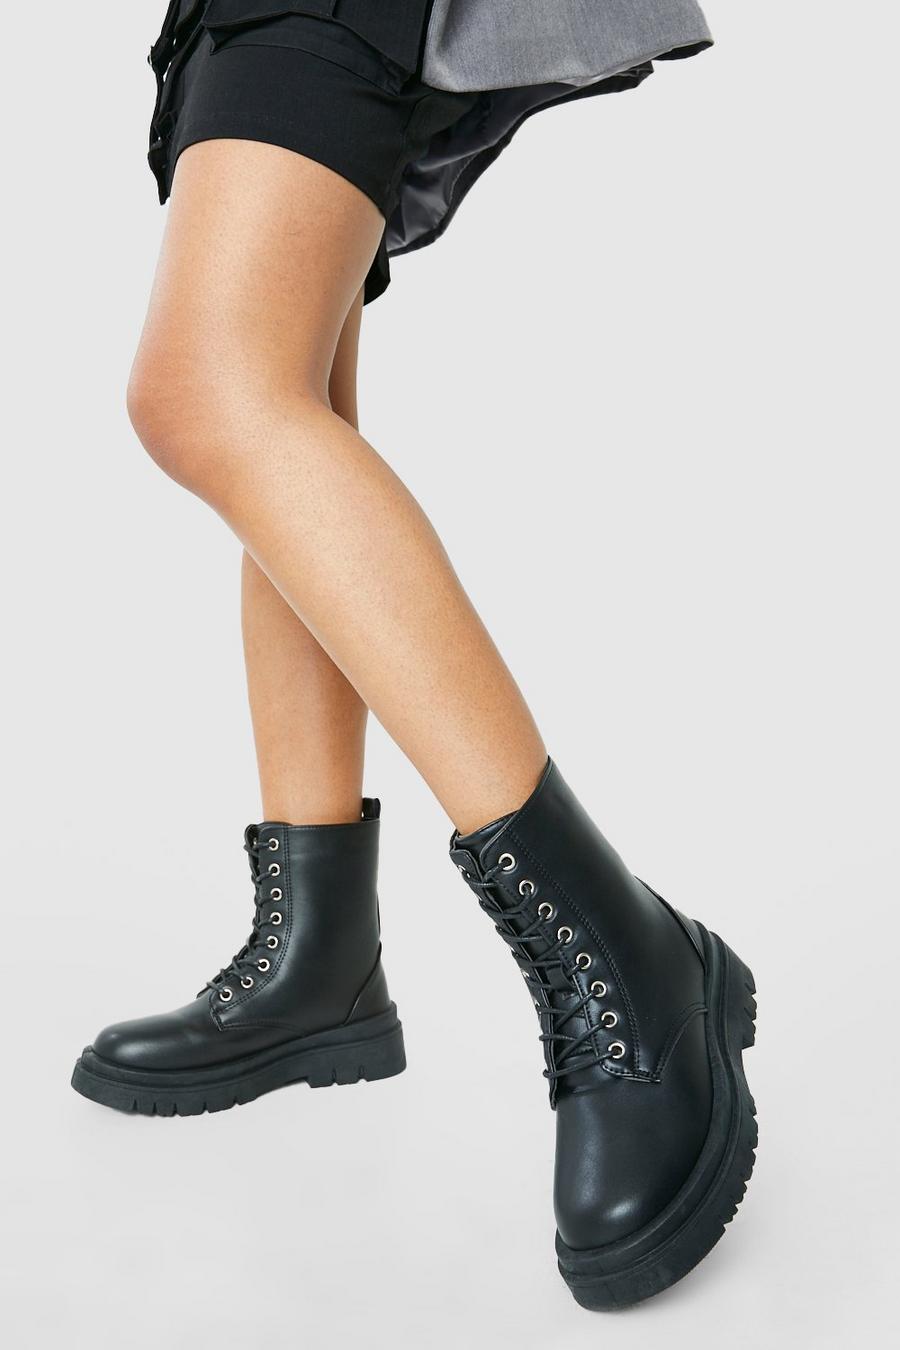 Black Lace Up Combat Boots